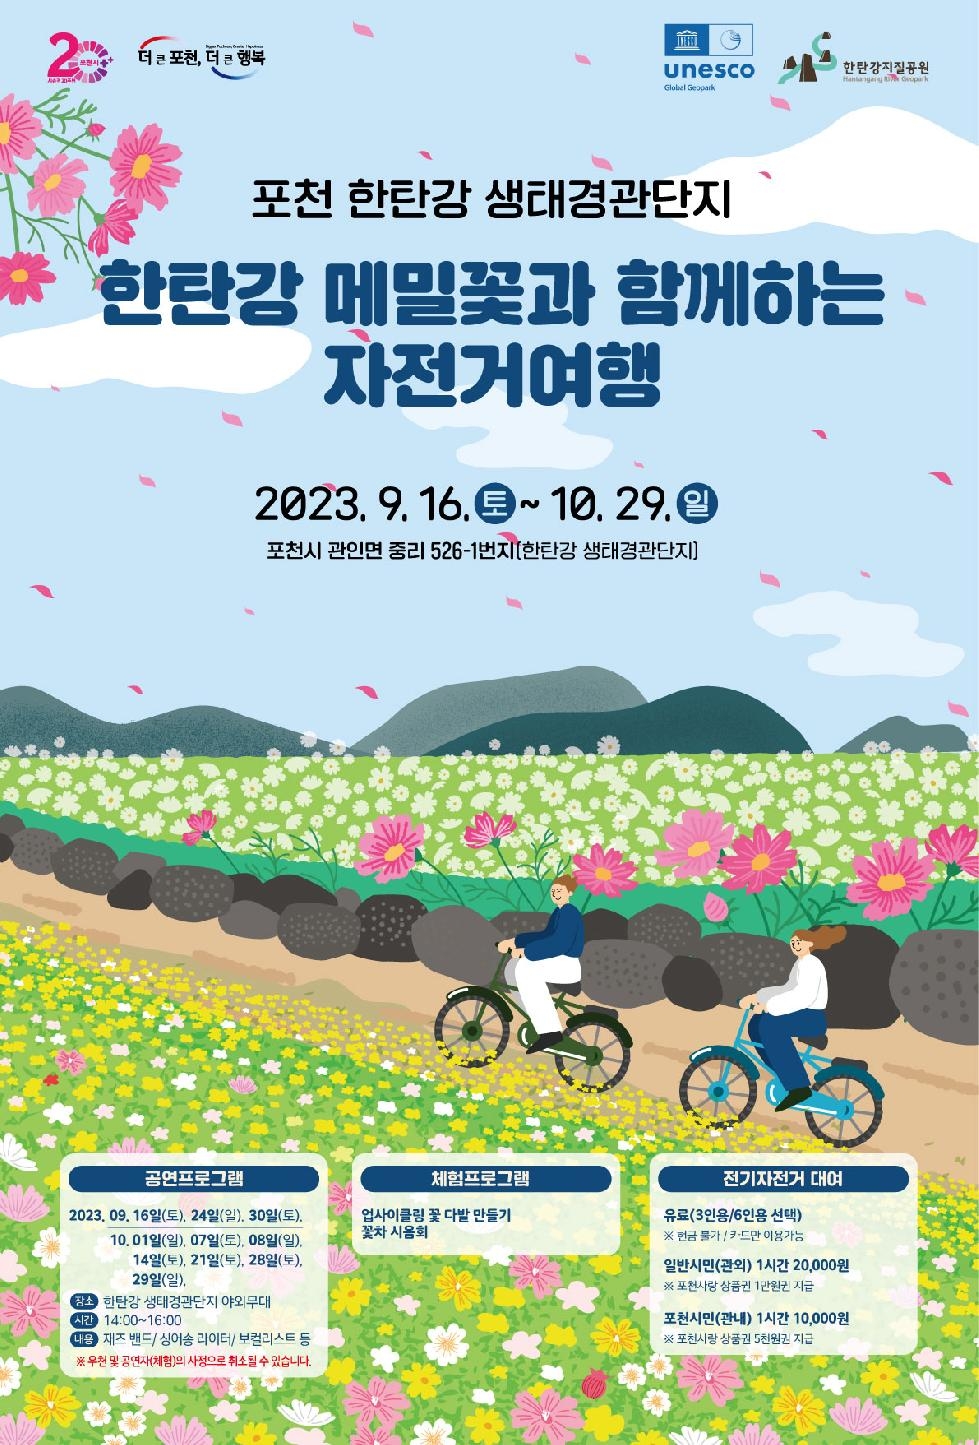 포천 한탄강 생태경관단지에서 ‘한탄강 메밀꽃과 함께하는 자전거 여행’행사